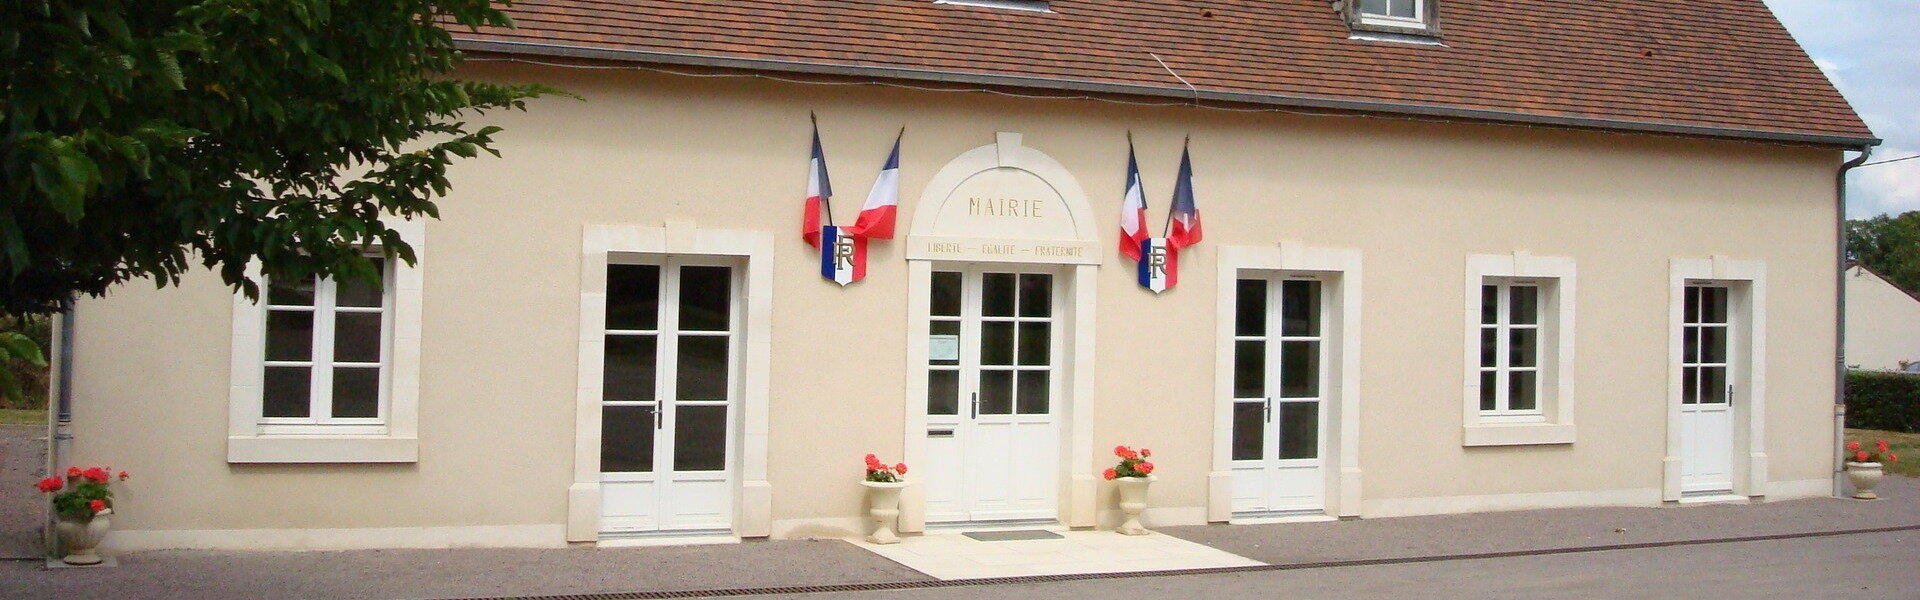 Commune Mairie Saint-Pierre-les-Bois Cher